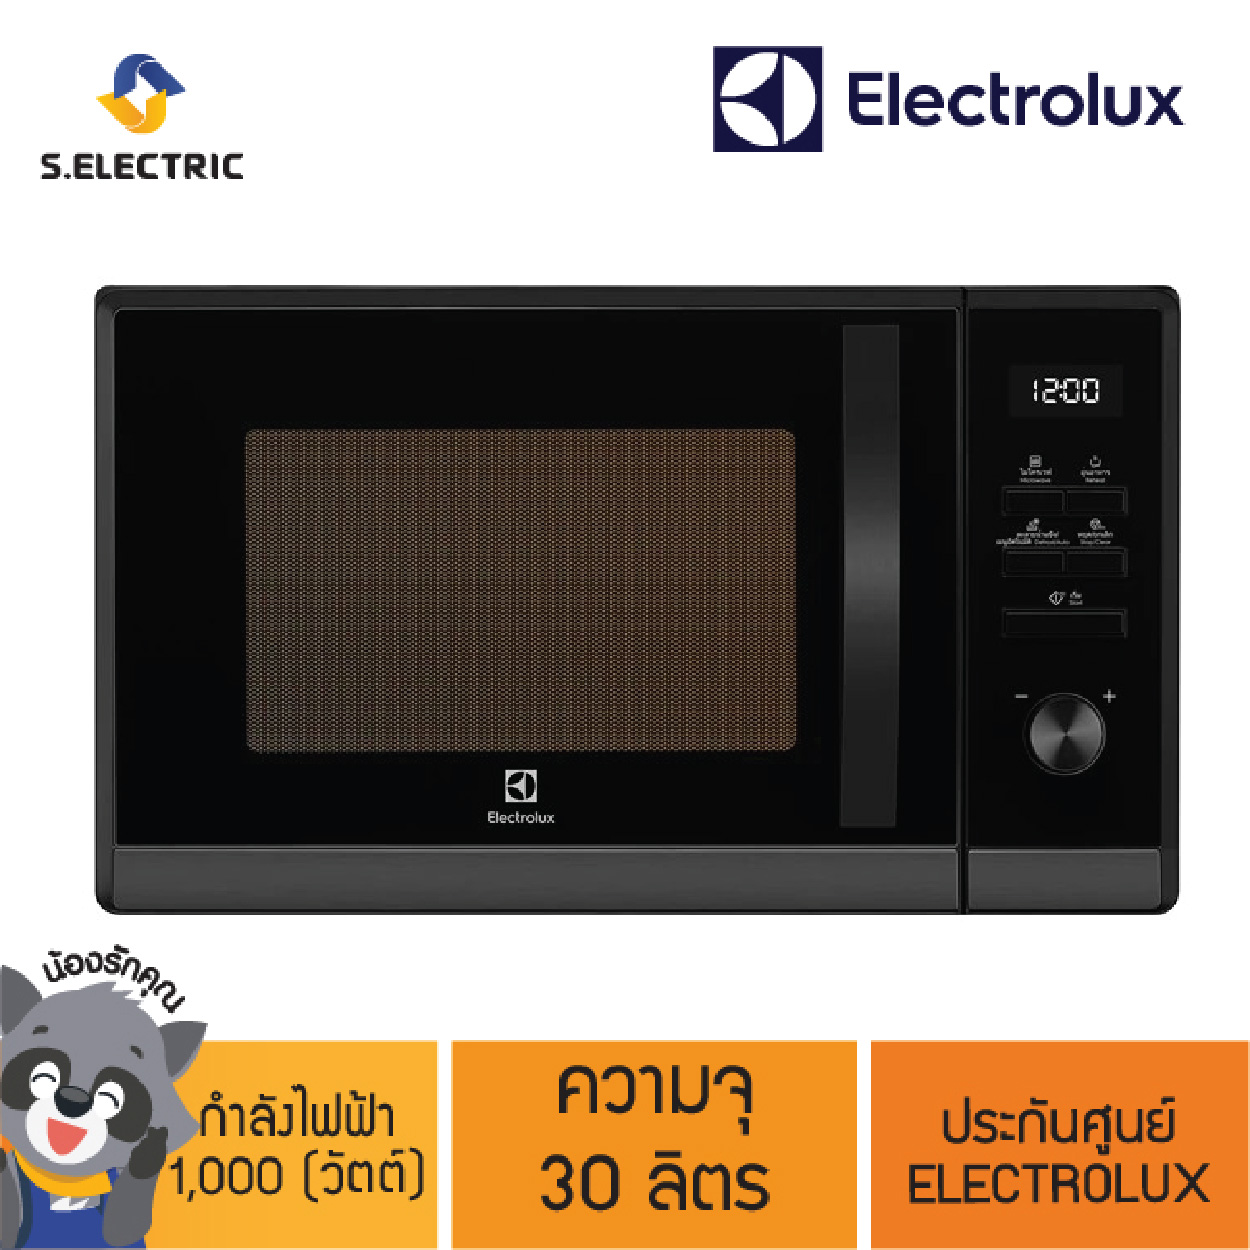 ELECTROLUX เตาอบไมโครเวฟ รุ่น EMM30D510EB ขนาด 30 ลิตร กำลังไป 1000 วัตต์ ปรับความร้อนได้ 5 ระดับ โปรแกรมทำอาหารอัตโนมัติ 8 เมนู สีดำ